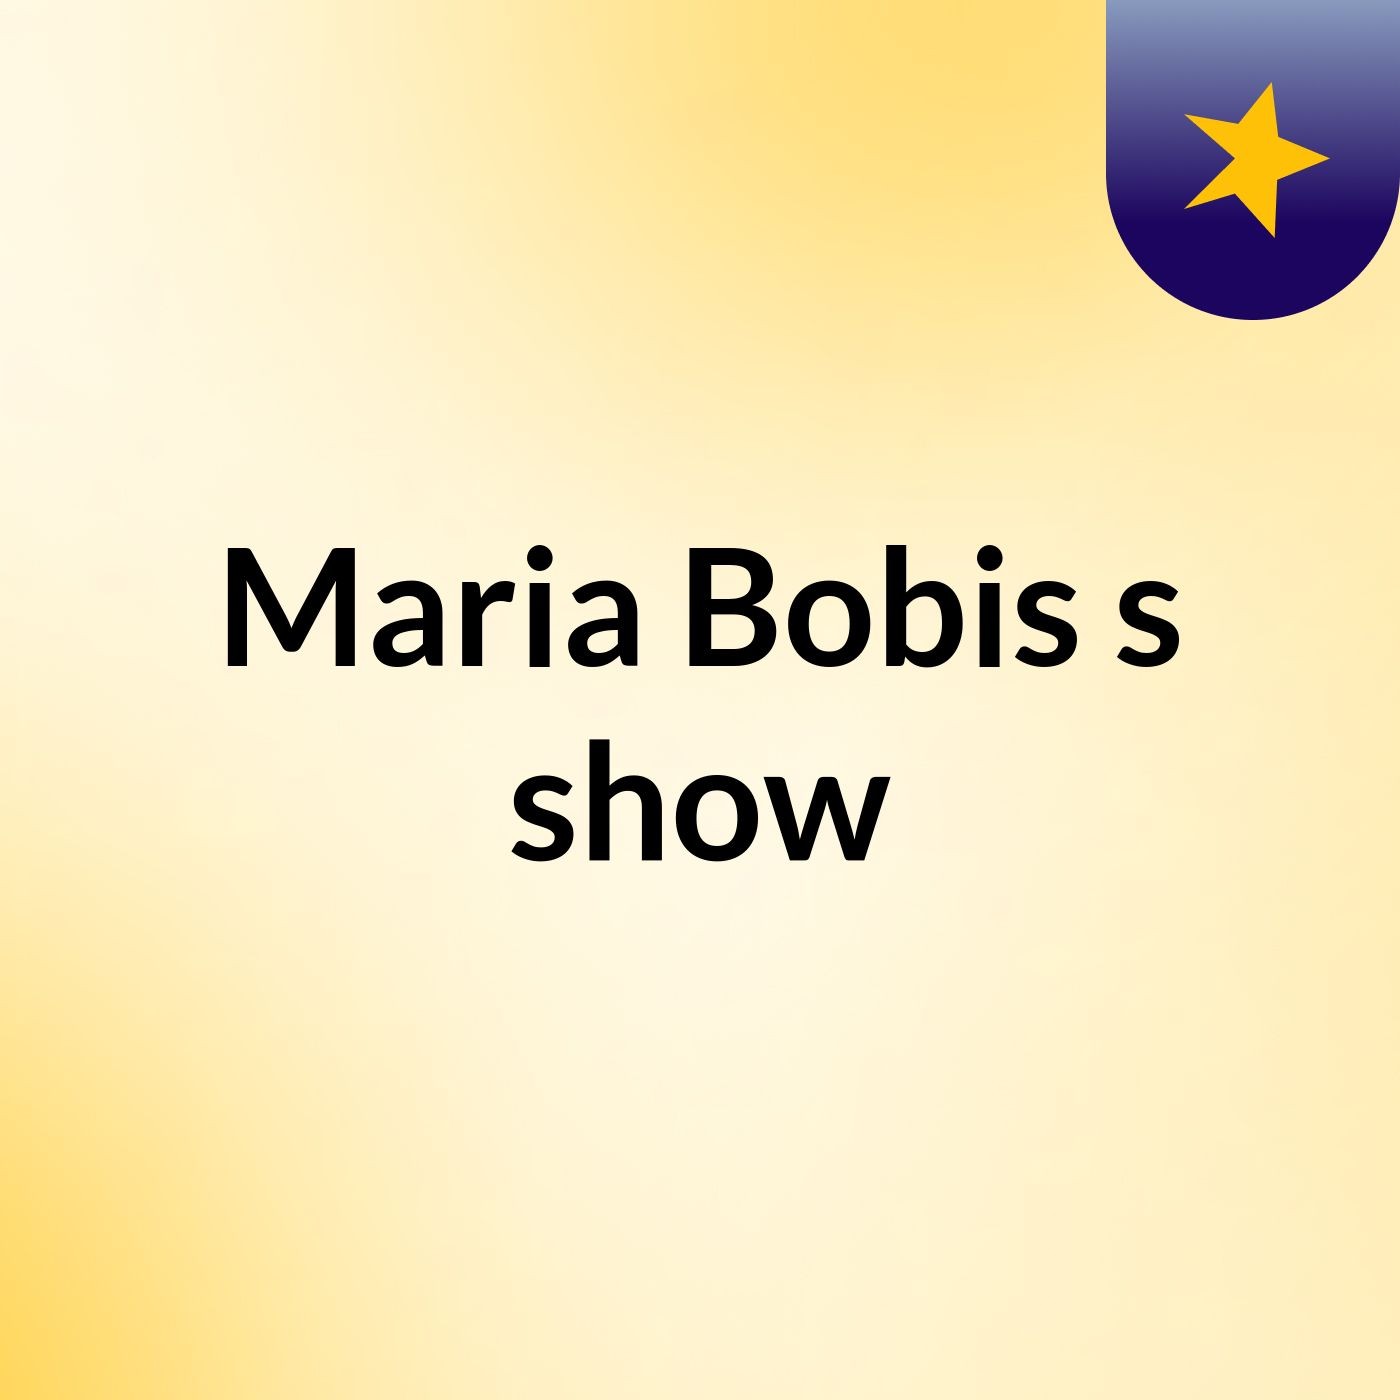 Maria Bobis's show